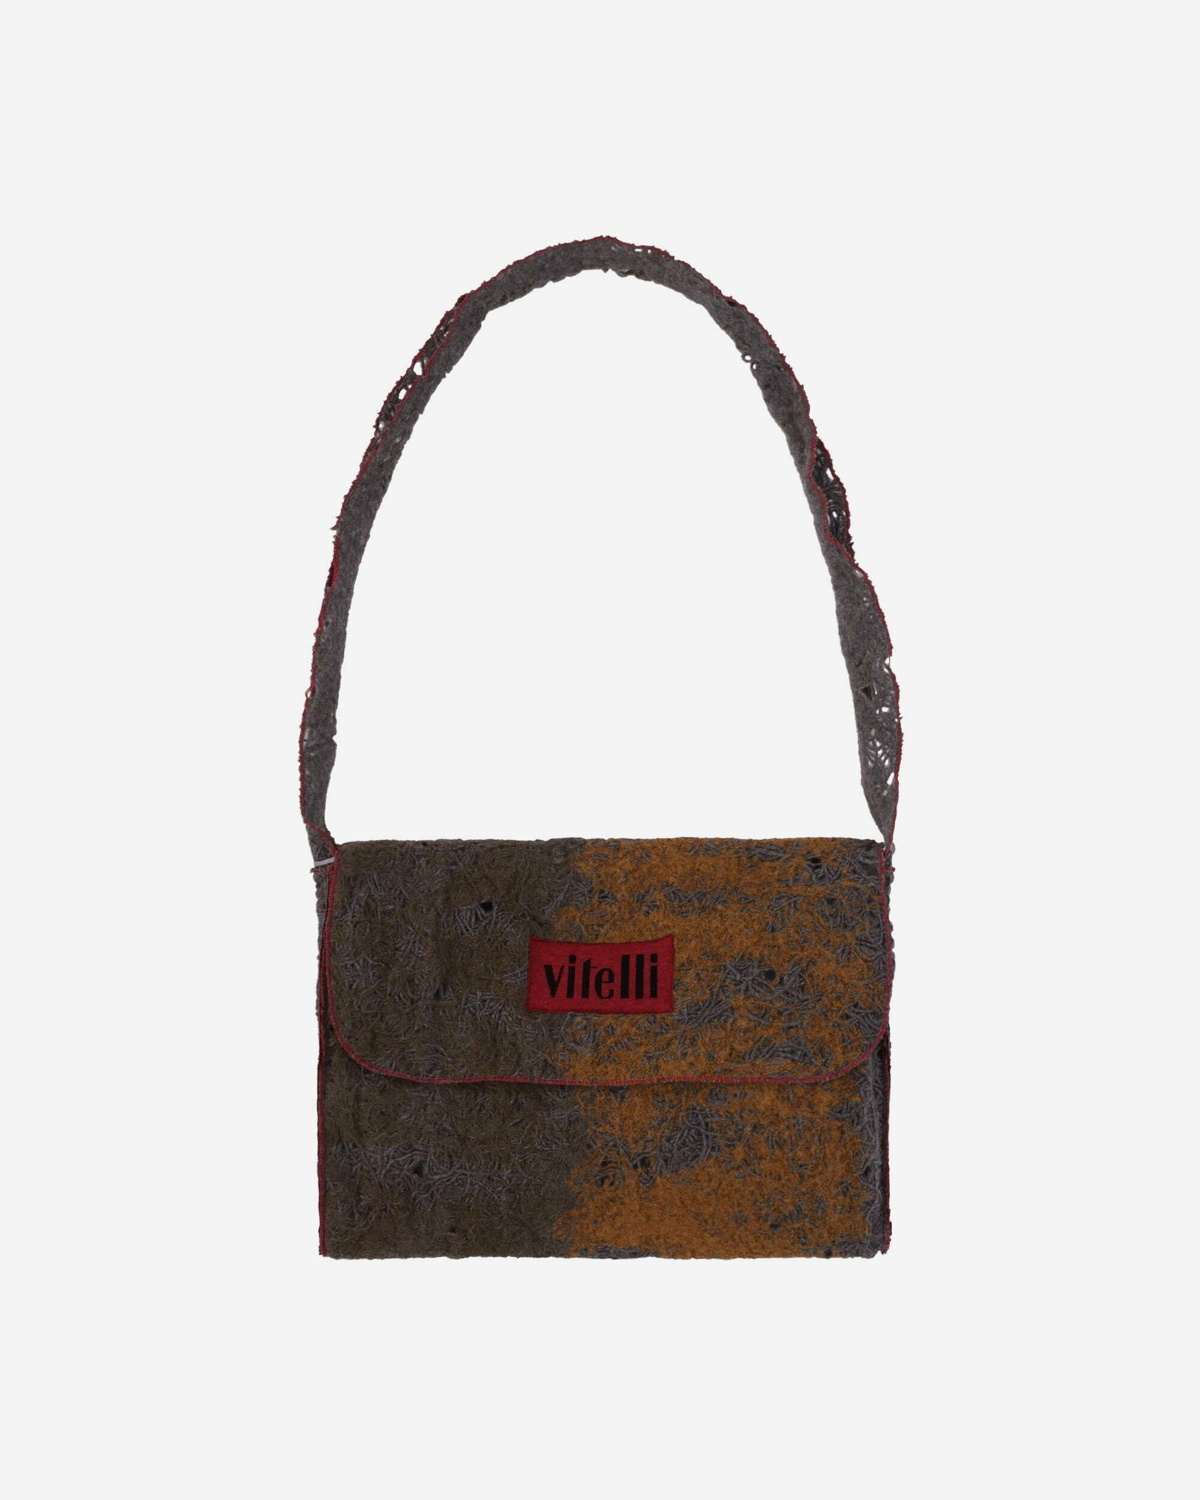 Doomboh Oversize Messenger Bag Vitelli